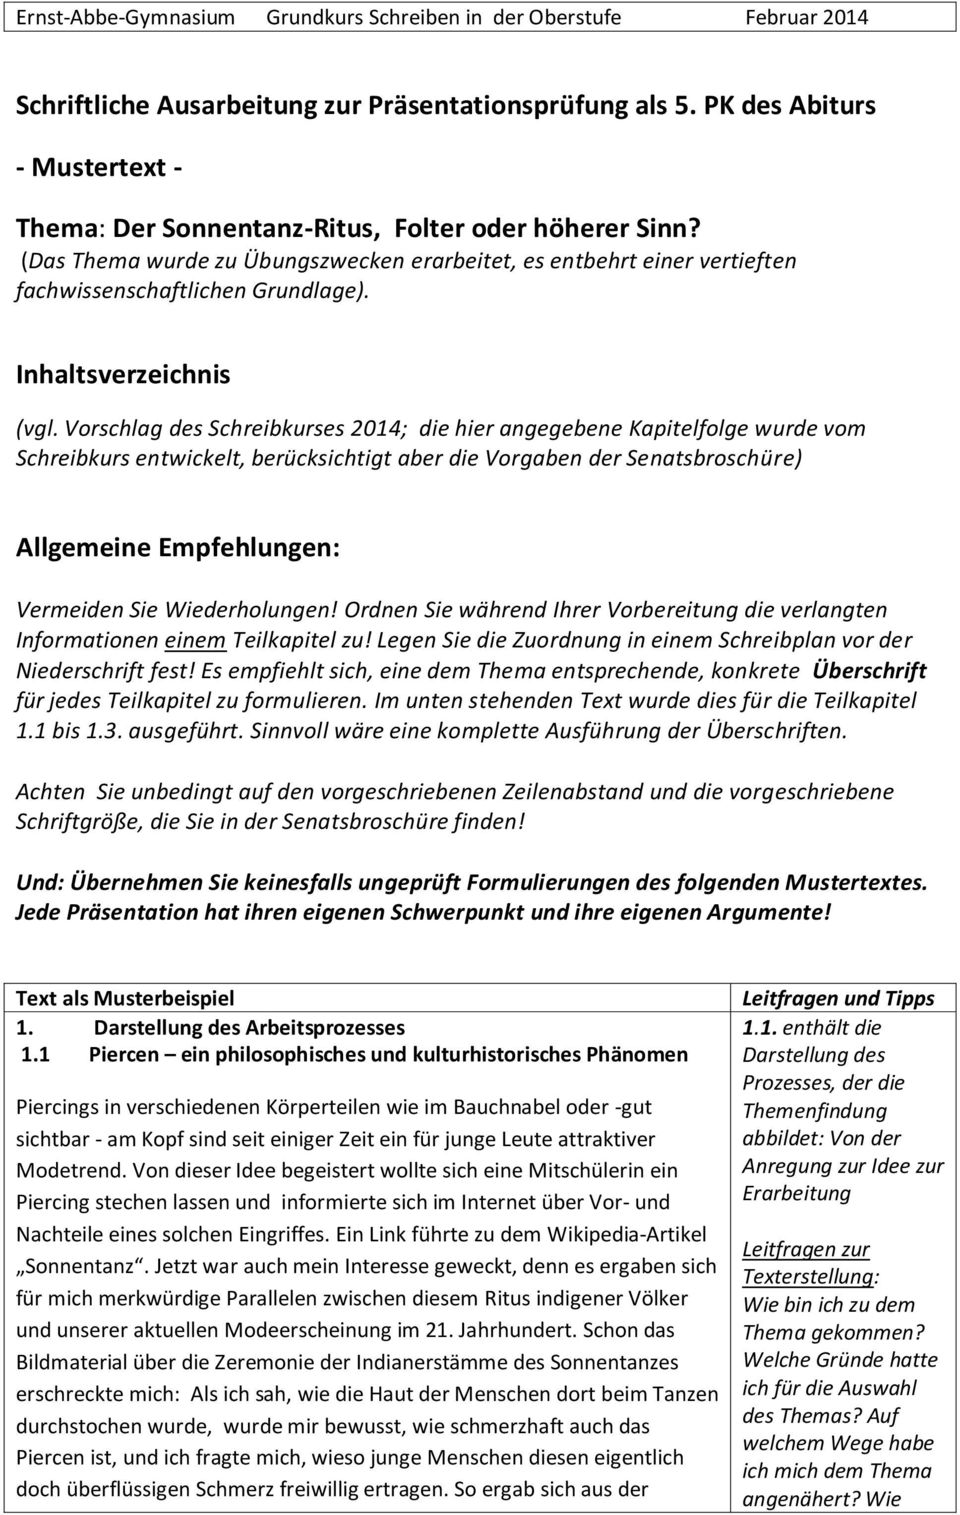 Schriftliche Ausarbeitung Zur Prasentationsprufung Als 5 Pk Des Abiturs Pdf Free Download